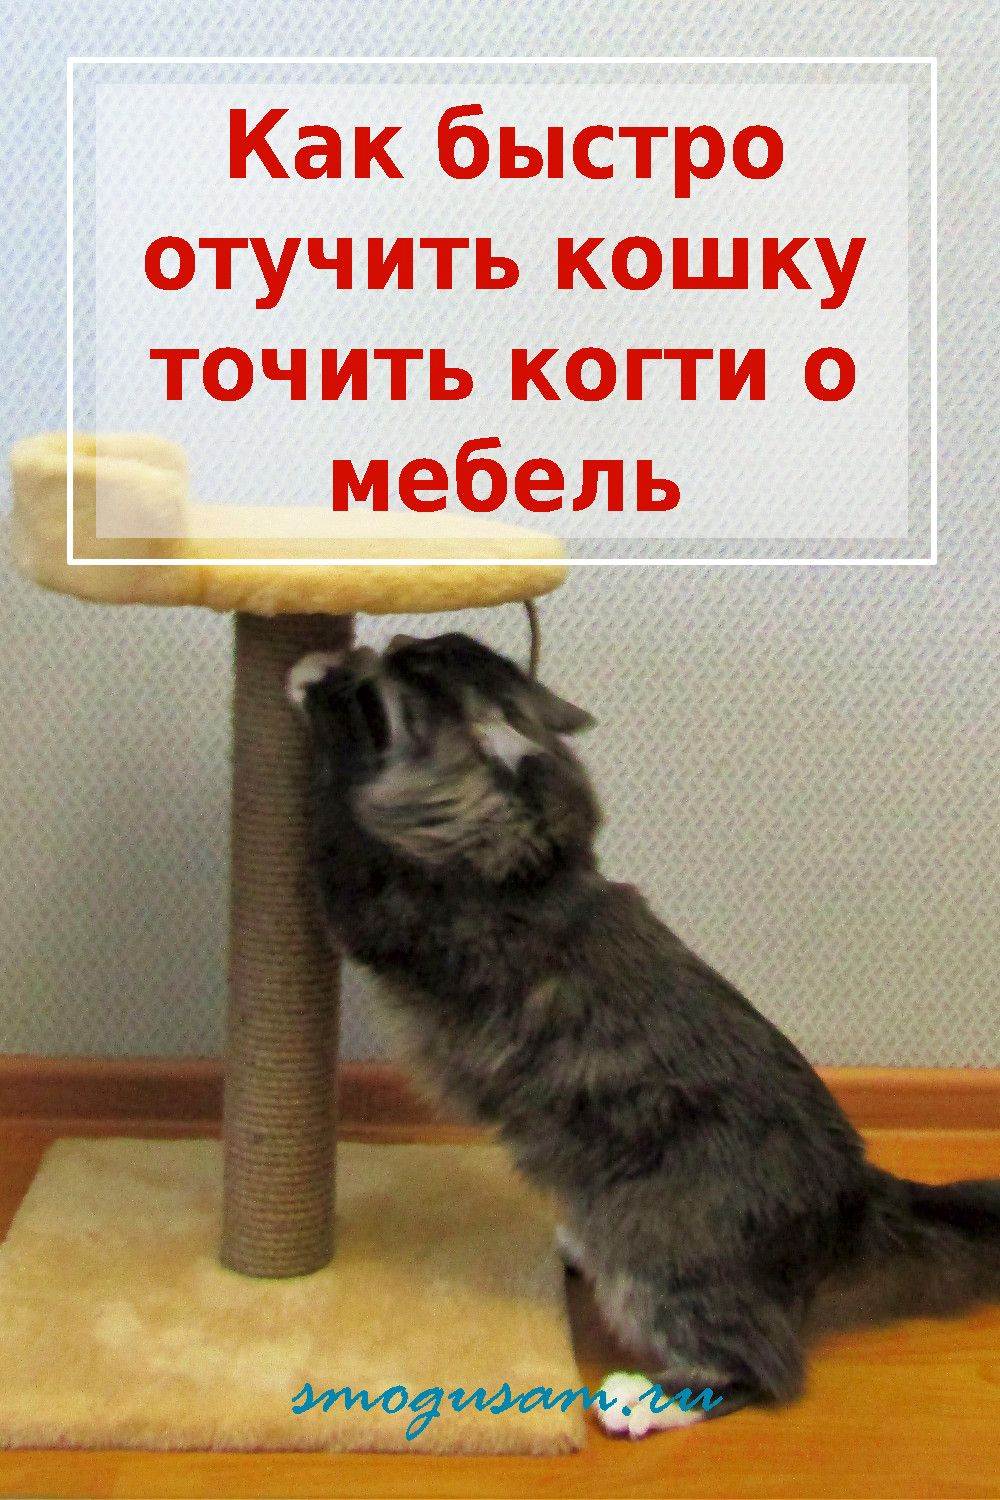 Как отучить кошку точить когти о мебель - wikihow